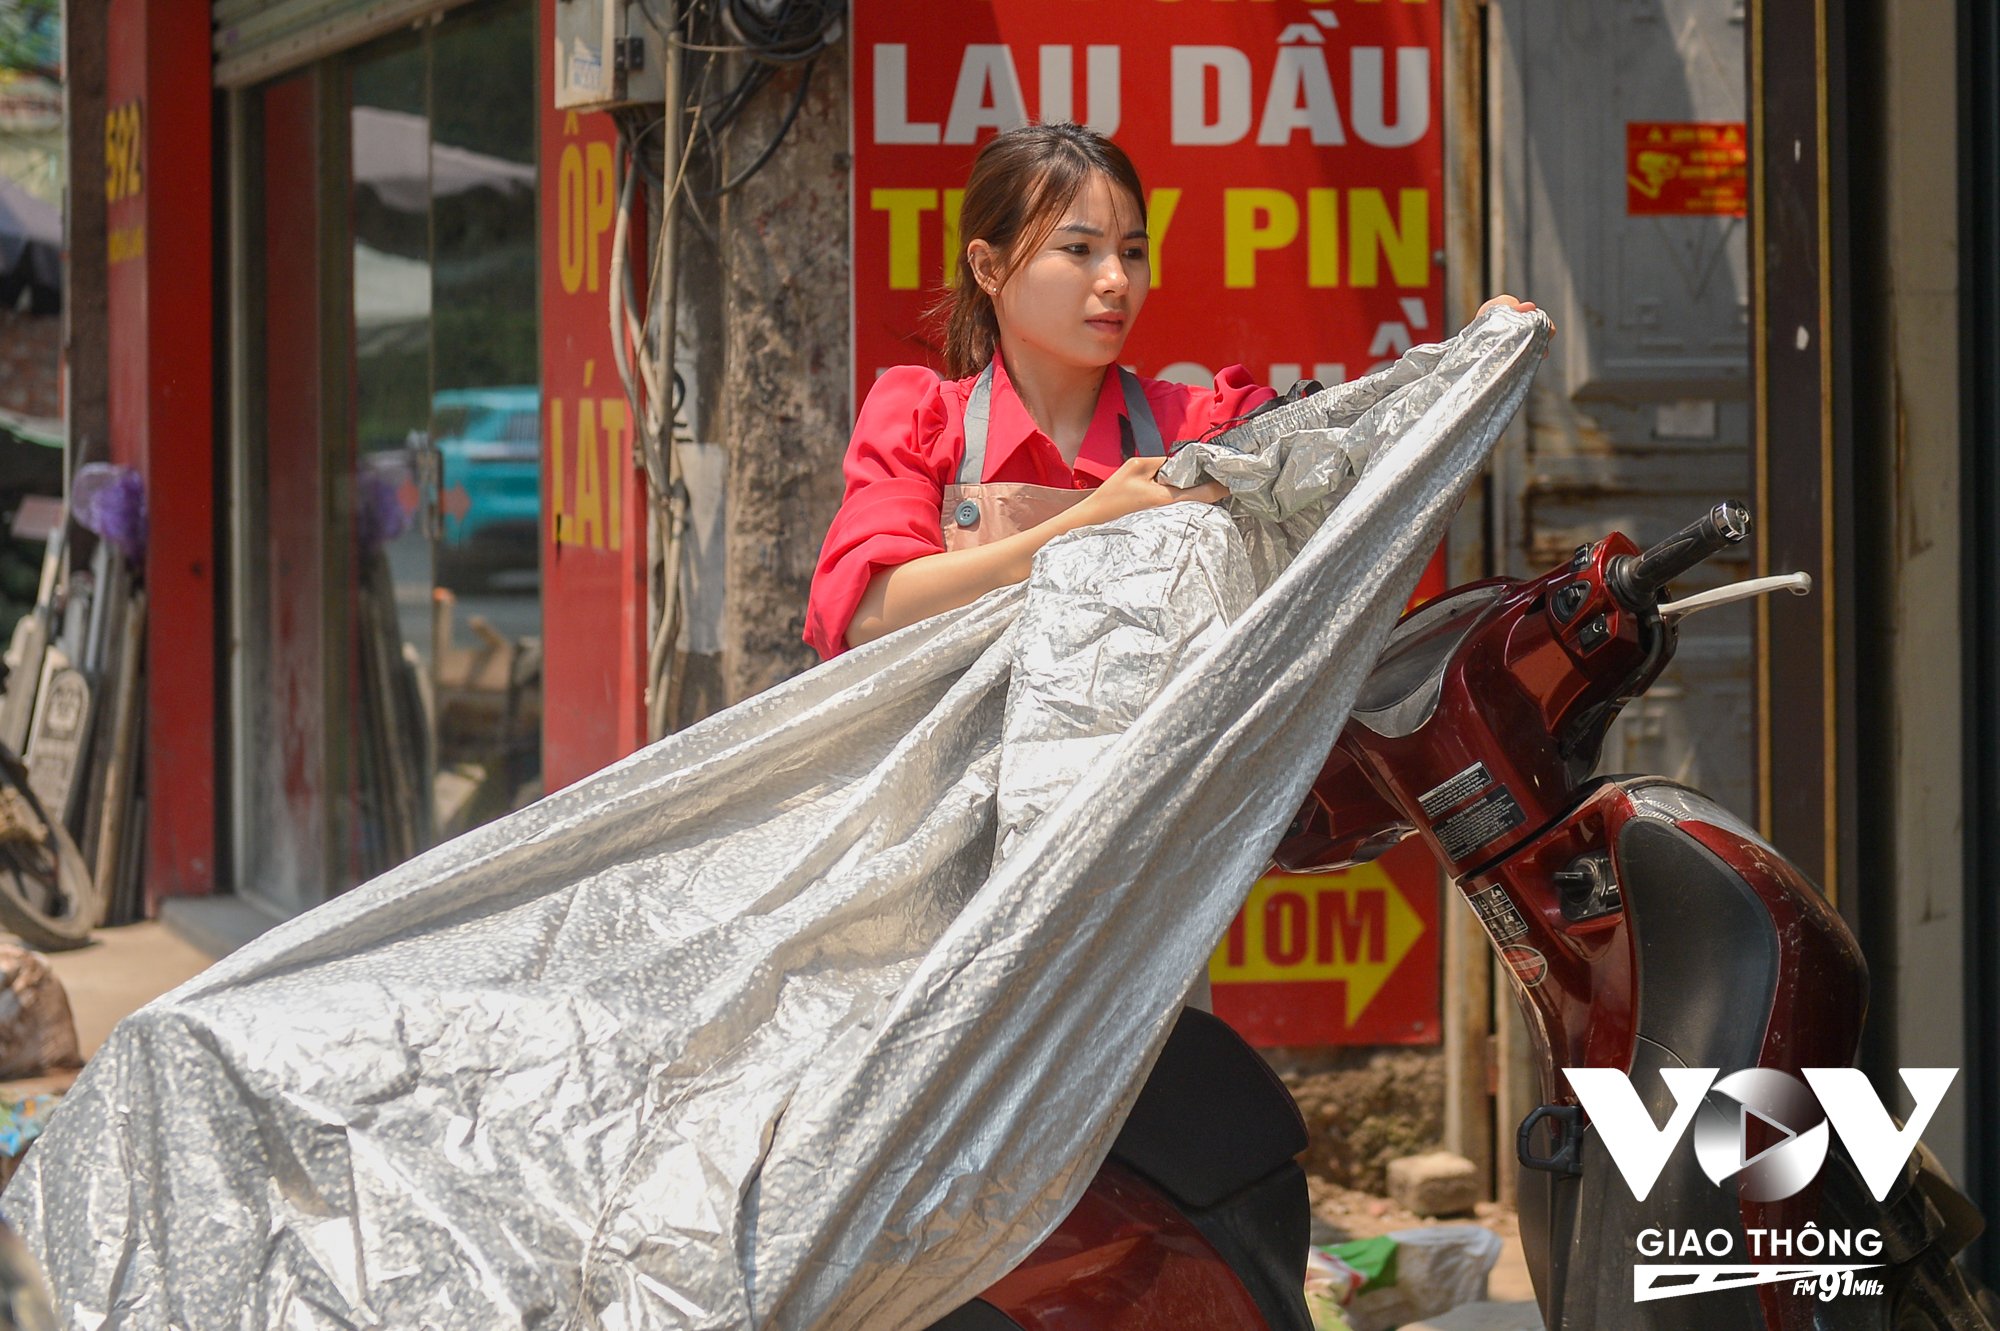 Nhiệt độ tăng cao, người dân lấy bạt để che chắn phương tiện. Chị Lê Thu, quận Ba Đình (Hà Nội) cho biết, mặc thù có thông tin là trong tháng 4 vẫn xuất hiện đợt không khí lạnh, tuy nhiên hiện tại thời tiết đang rất nóng.